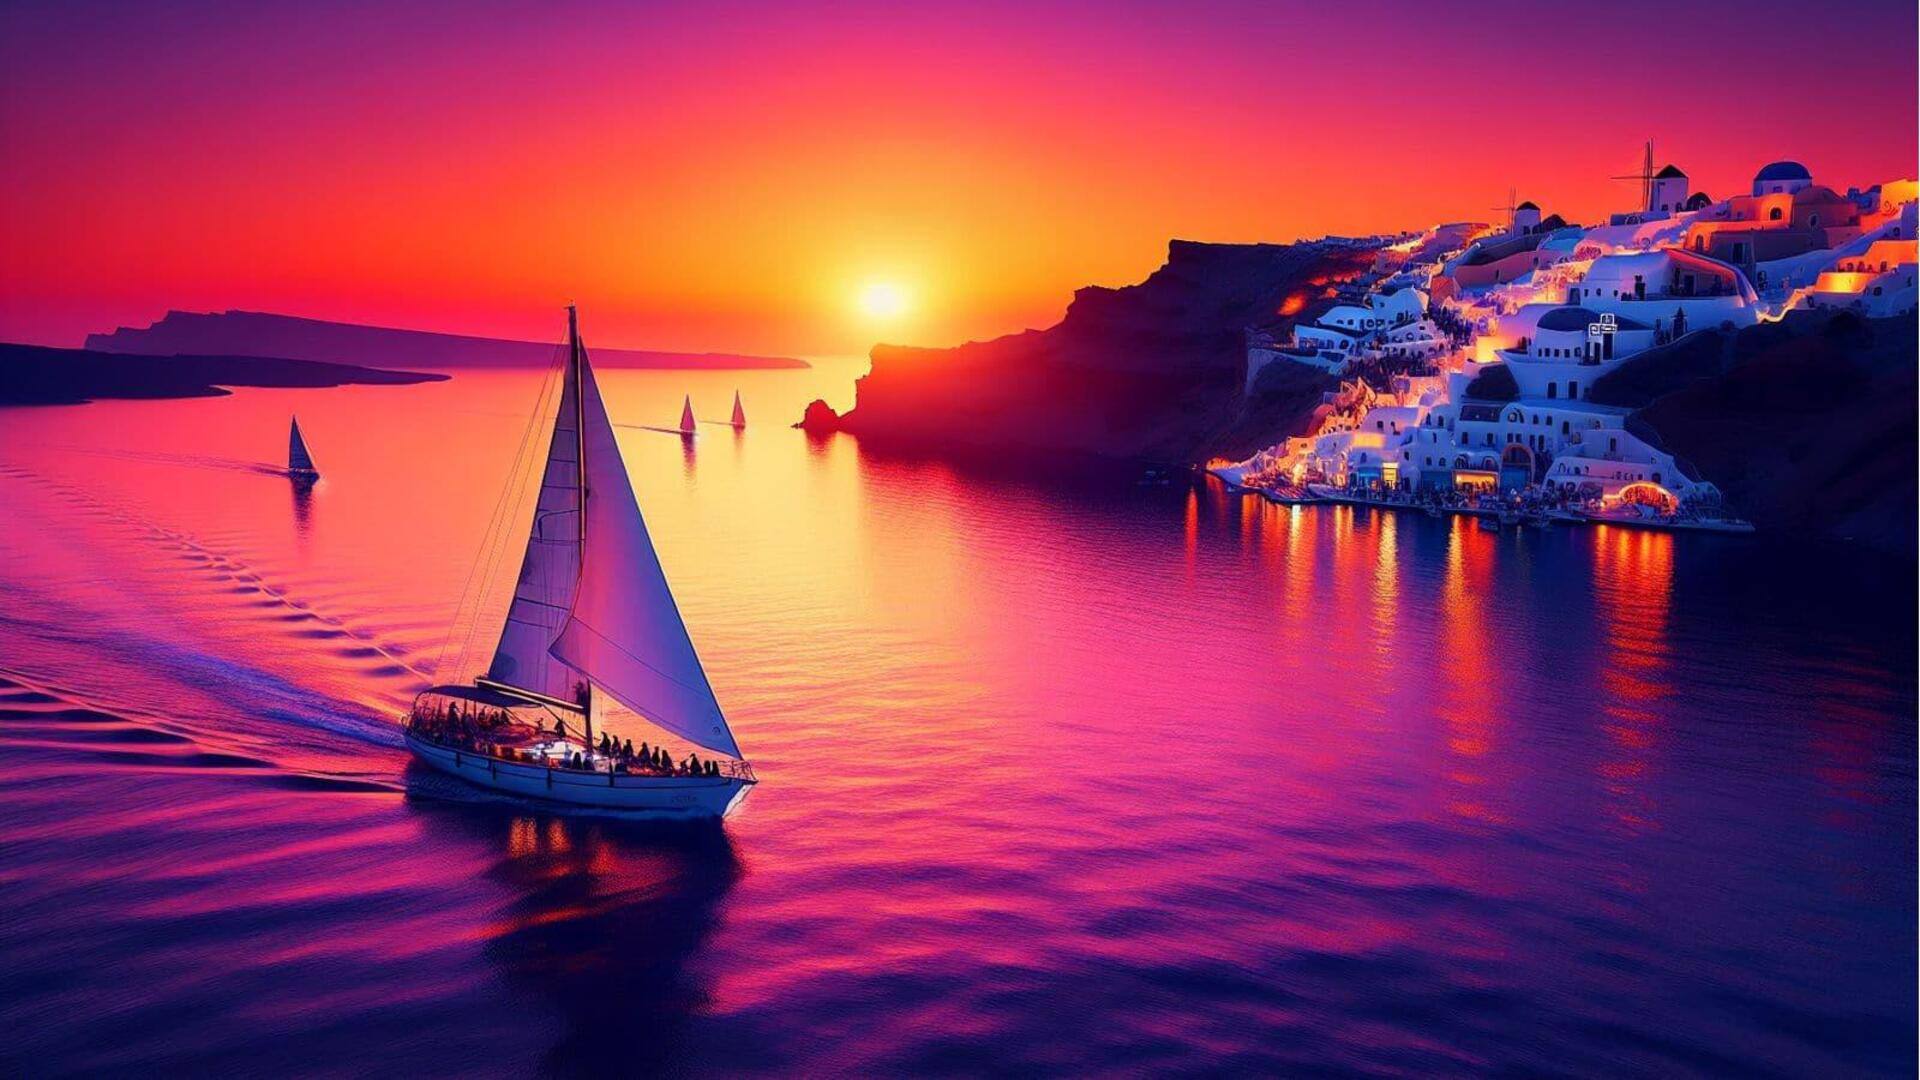 Kunjungi Santorini untuk menikmati pengalaman berlayar saat matahari terbenam